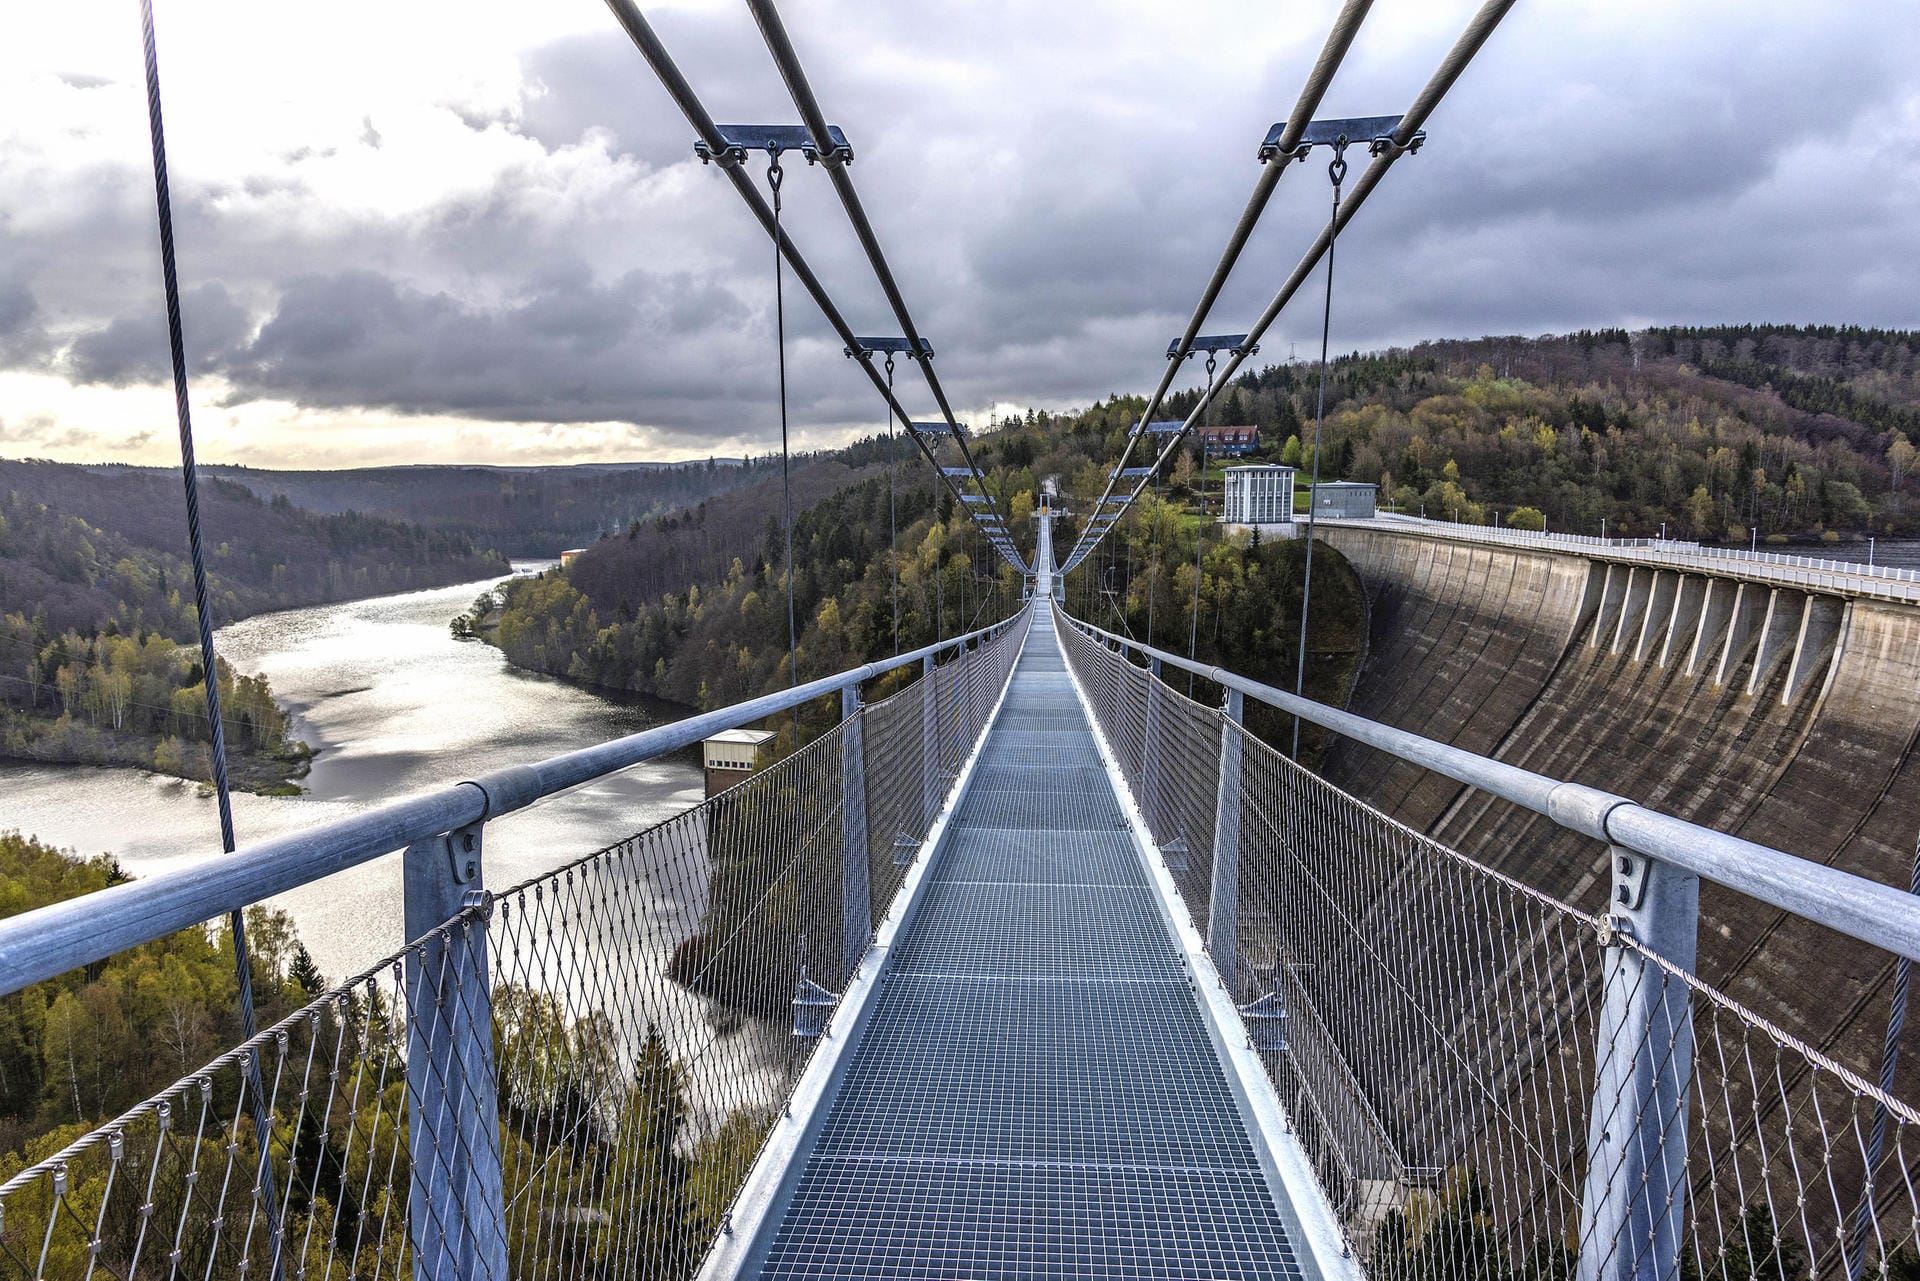 Wer schwindelfrei ist, kann von der Hängebrücke im Harz eine sensationelle Aussicht genießen.